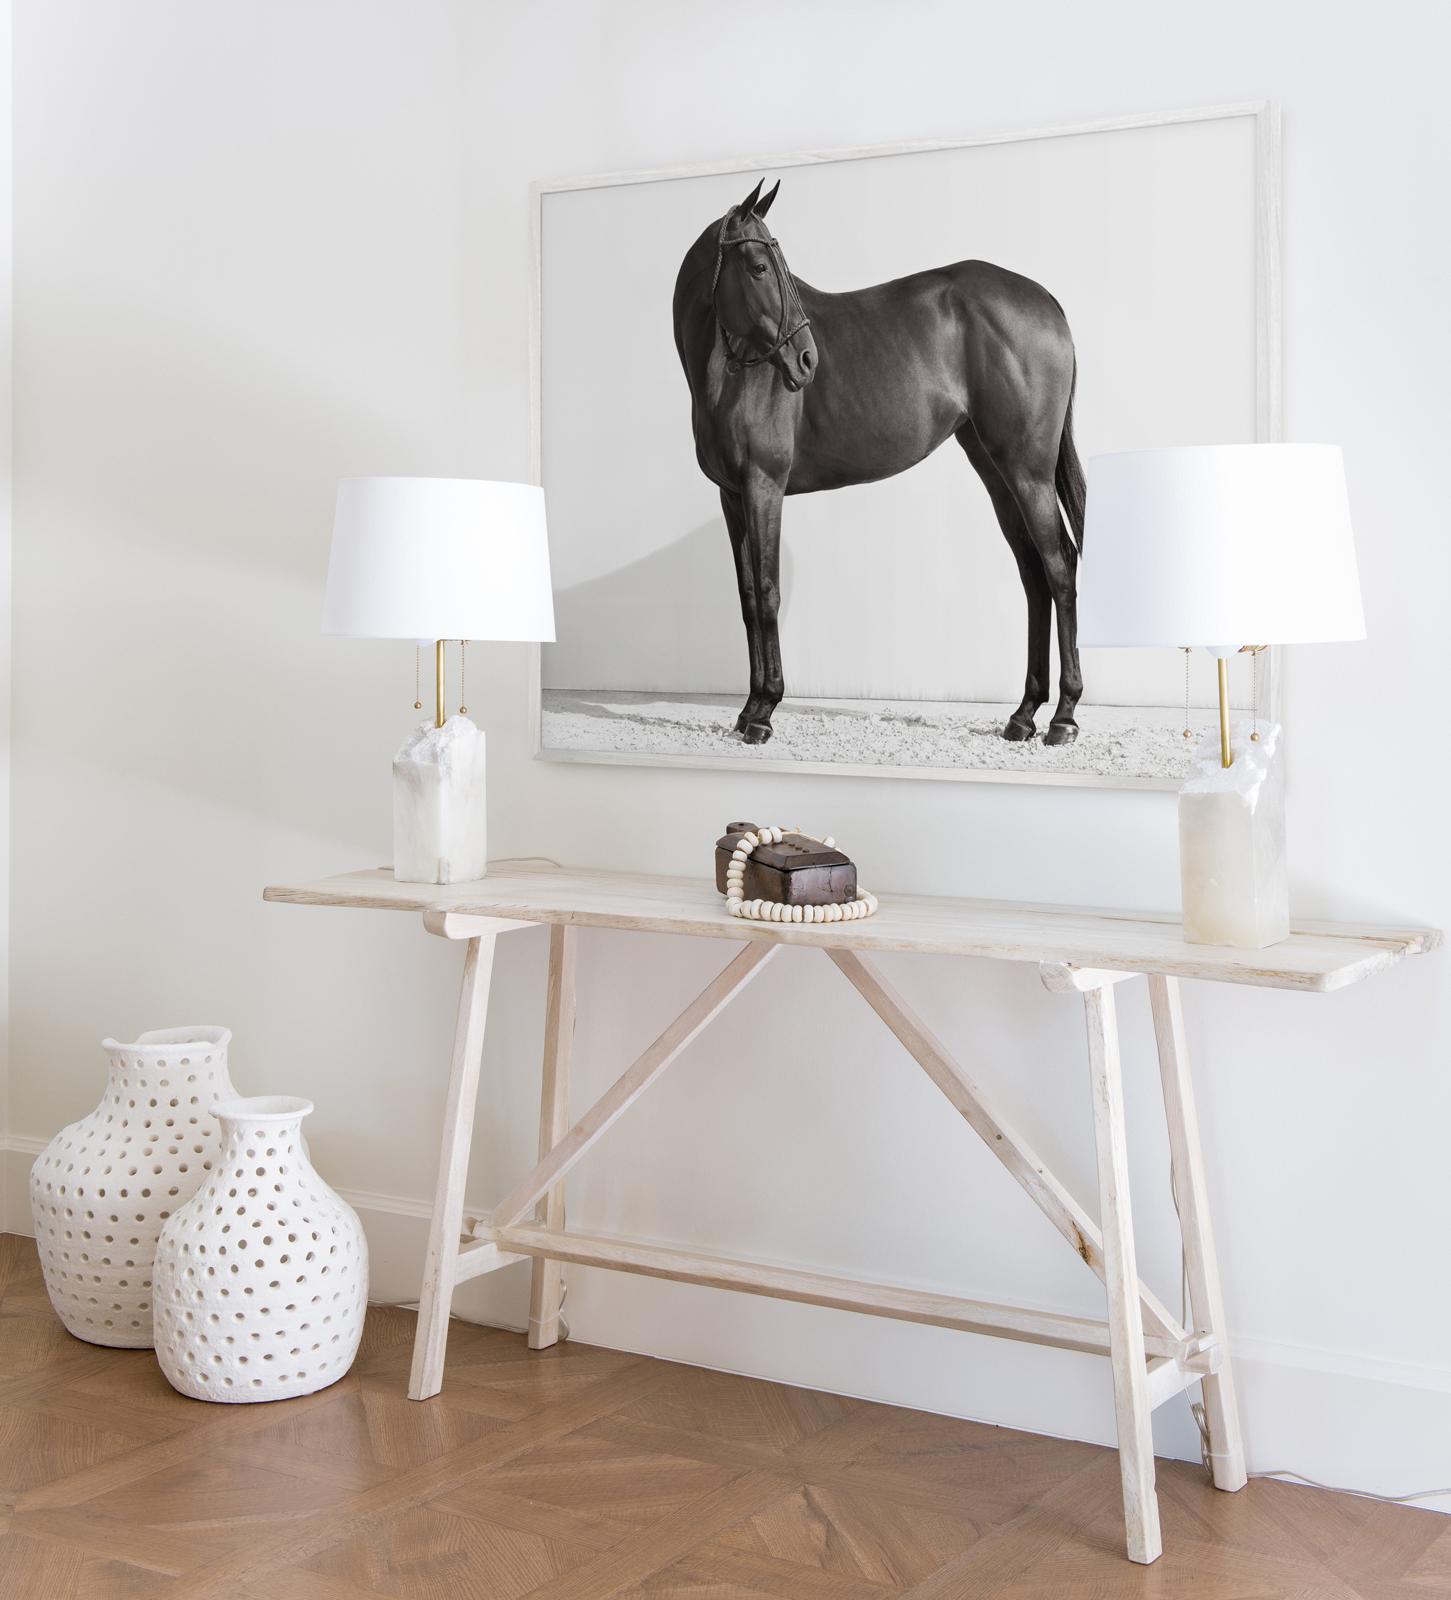 Reiterporträt, klassisches, schwarzes Pferd mit Schöpfkelle, Reins und Bonnet – Photograph von Drew Doggett